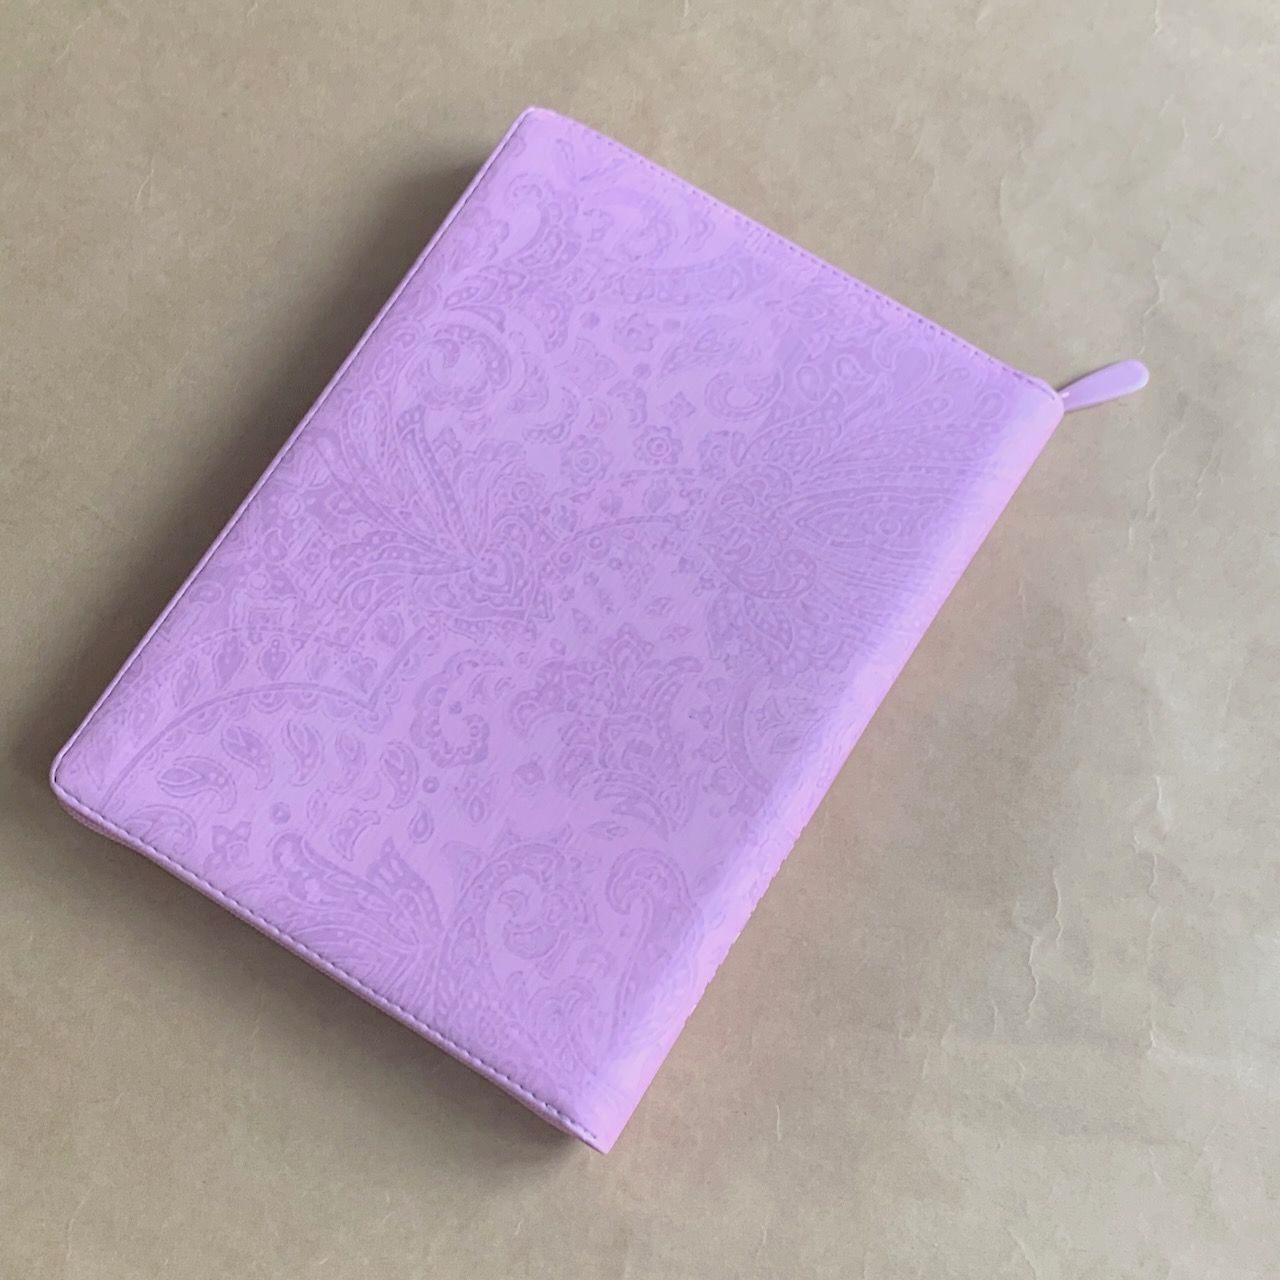 Библия 076zti код G2, дизайн "голубь" термо печать, переплет из искусственной кожи на молнии с индексами, цвет розовый с цветной печатью, размер 180x243 мм